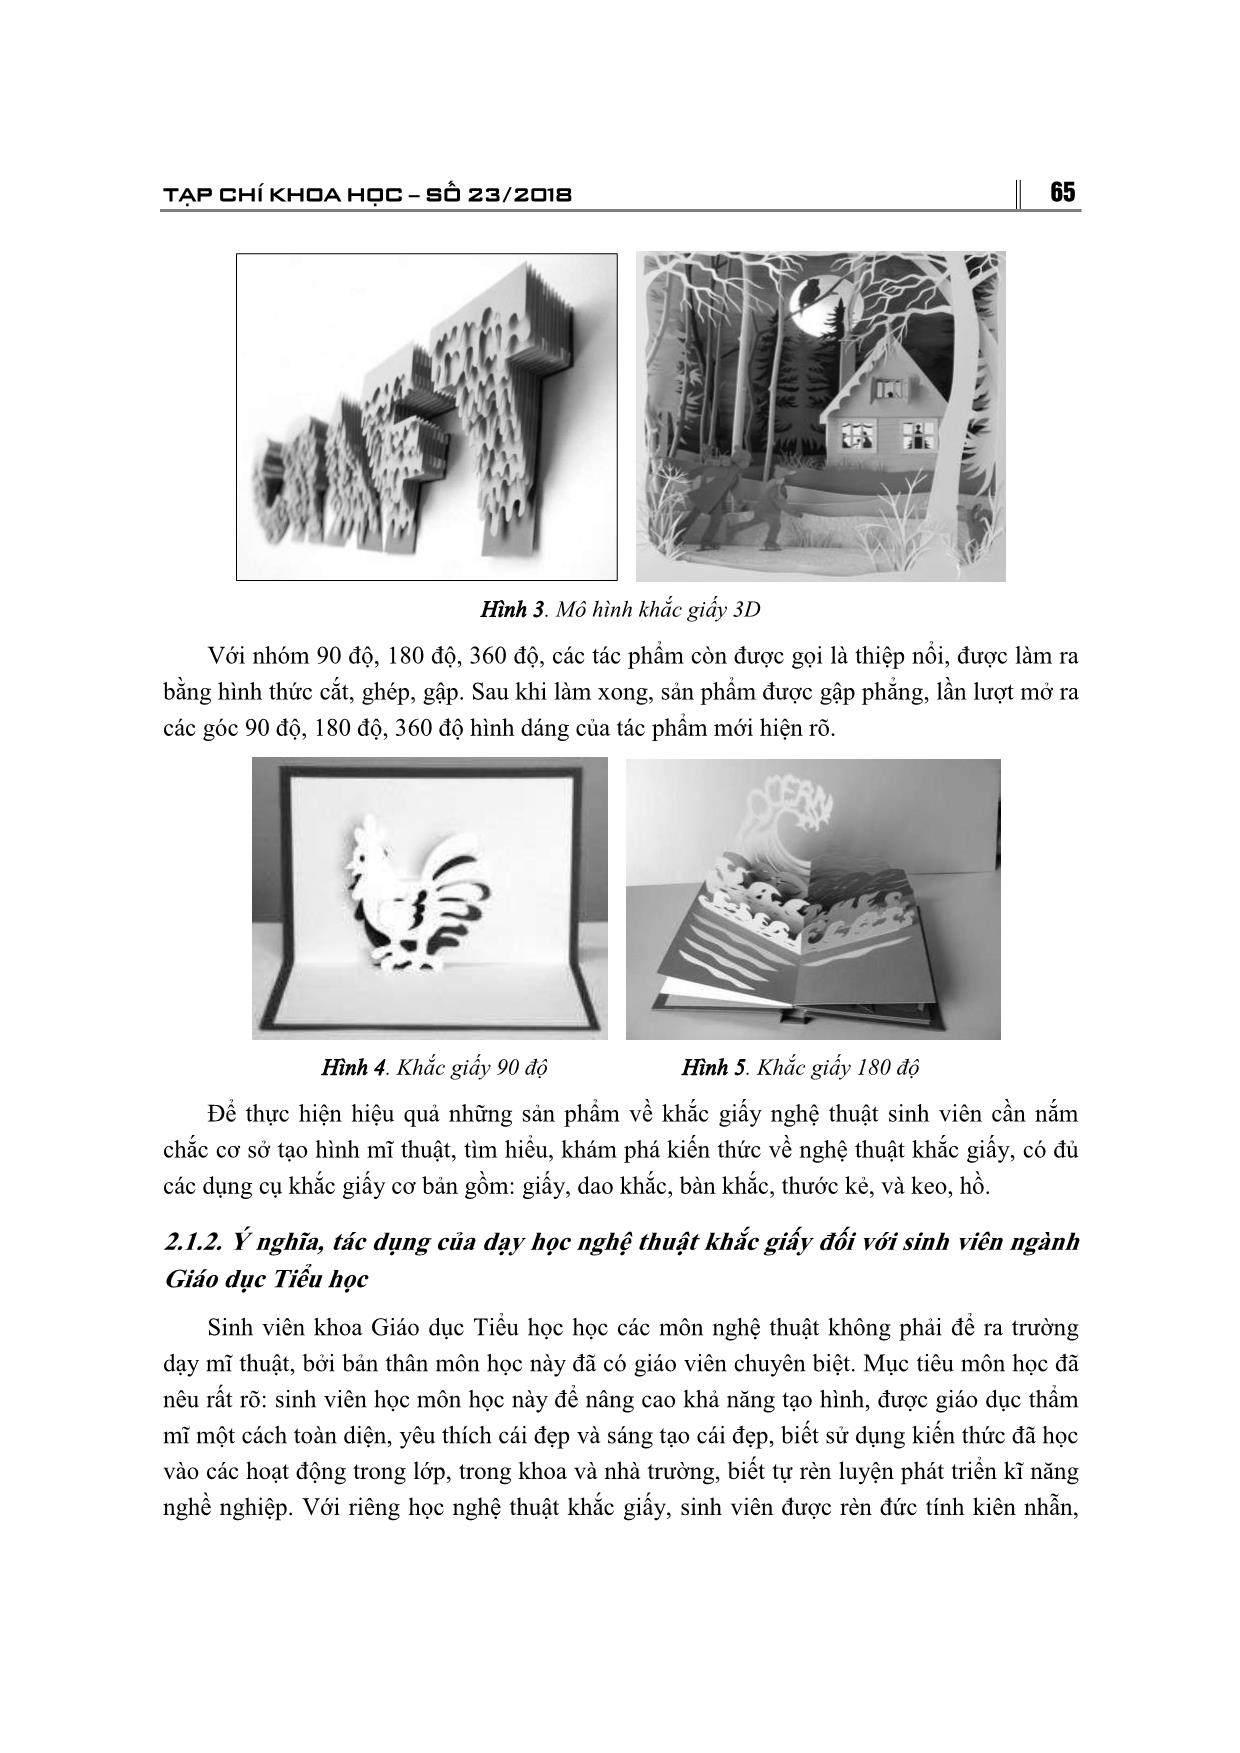 Sử dụng nghệ thuật khắc giấy trong dạy học mĩ thuật cho sinh viên ngành giáo dục tiểu học – Trường đại học thủ đô Hà Nội trang 4